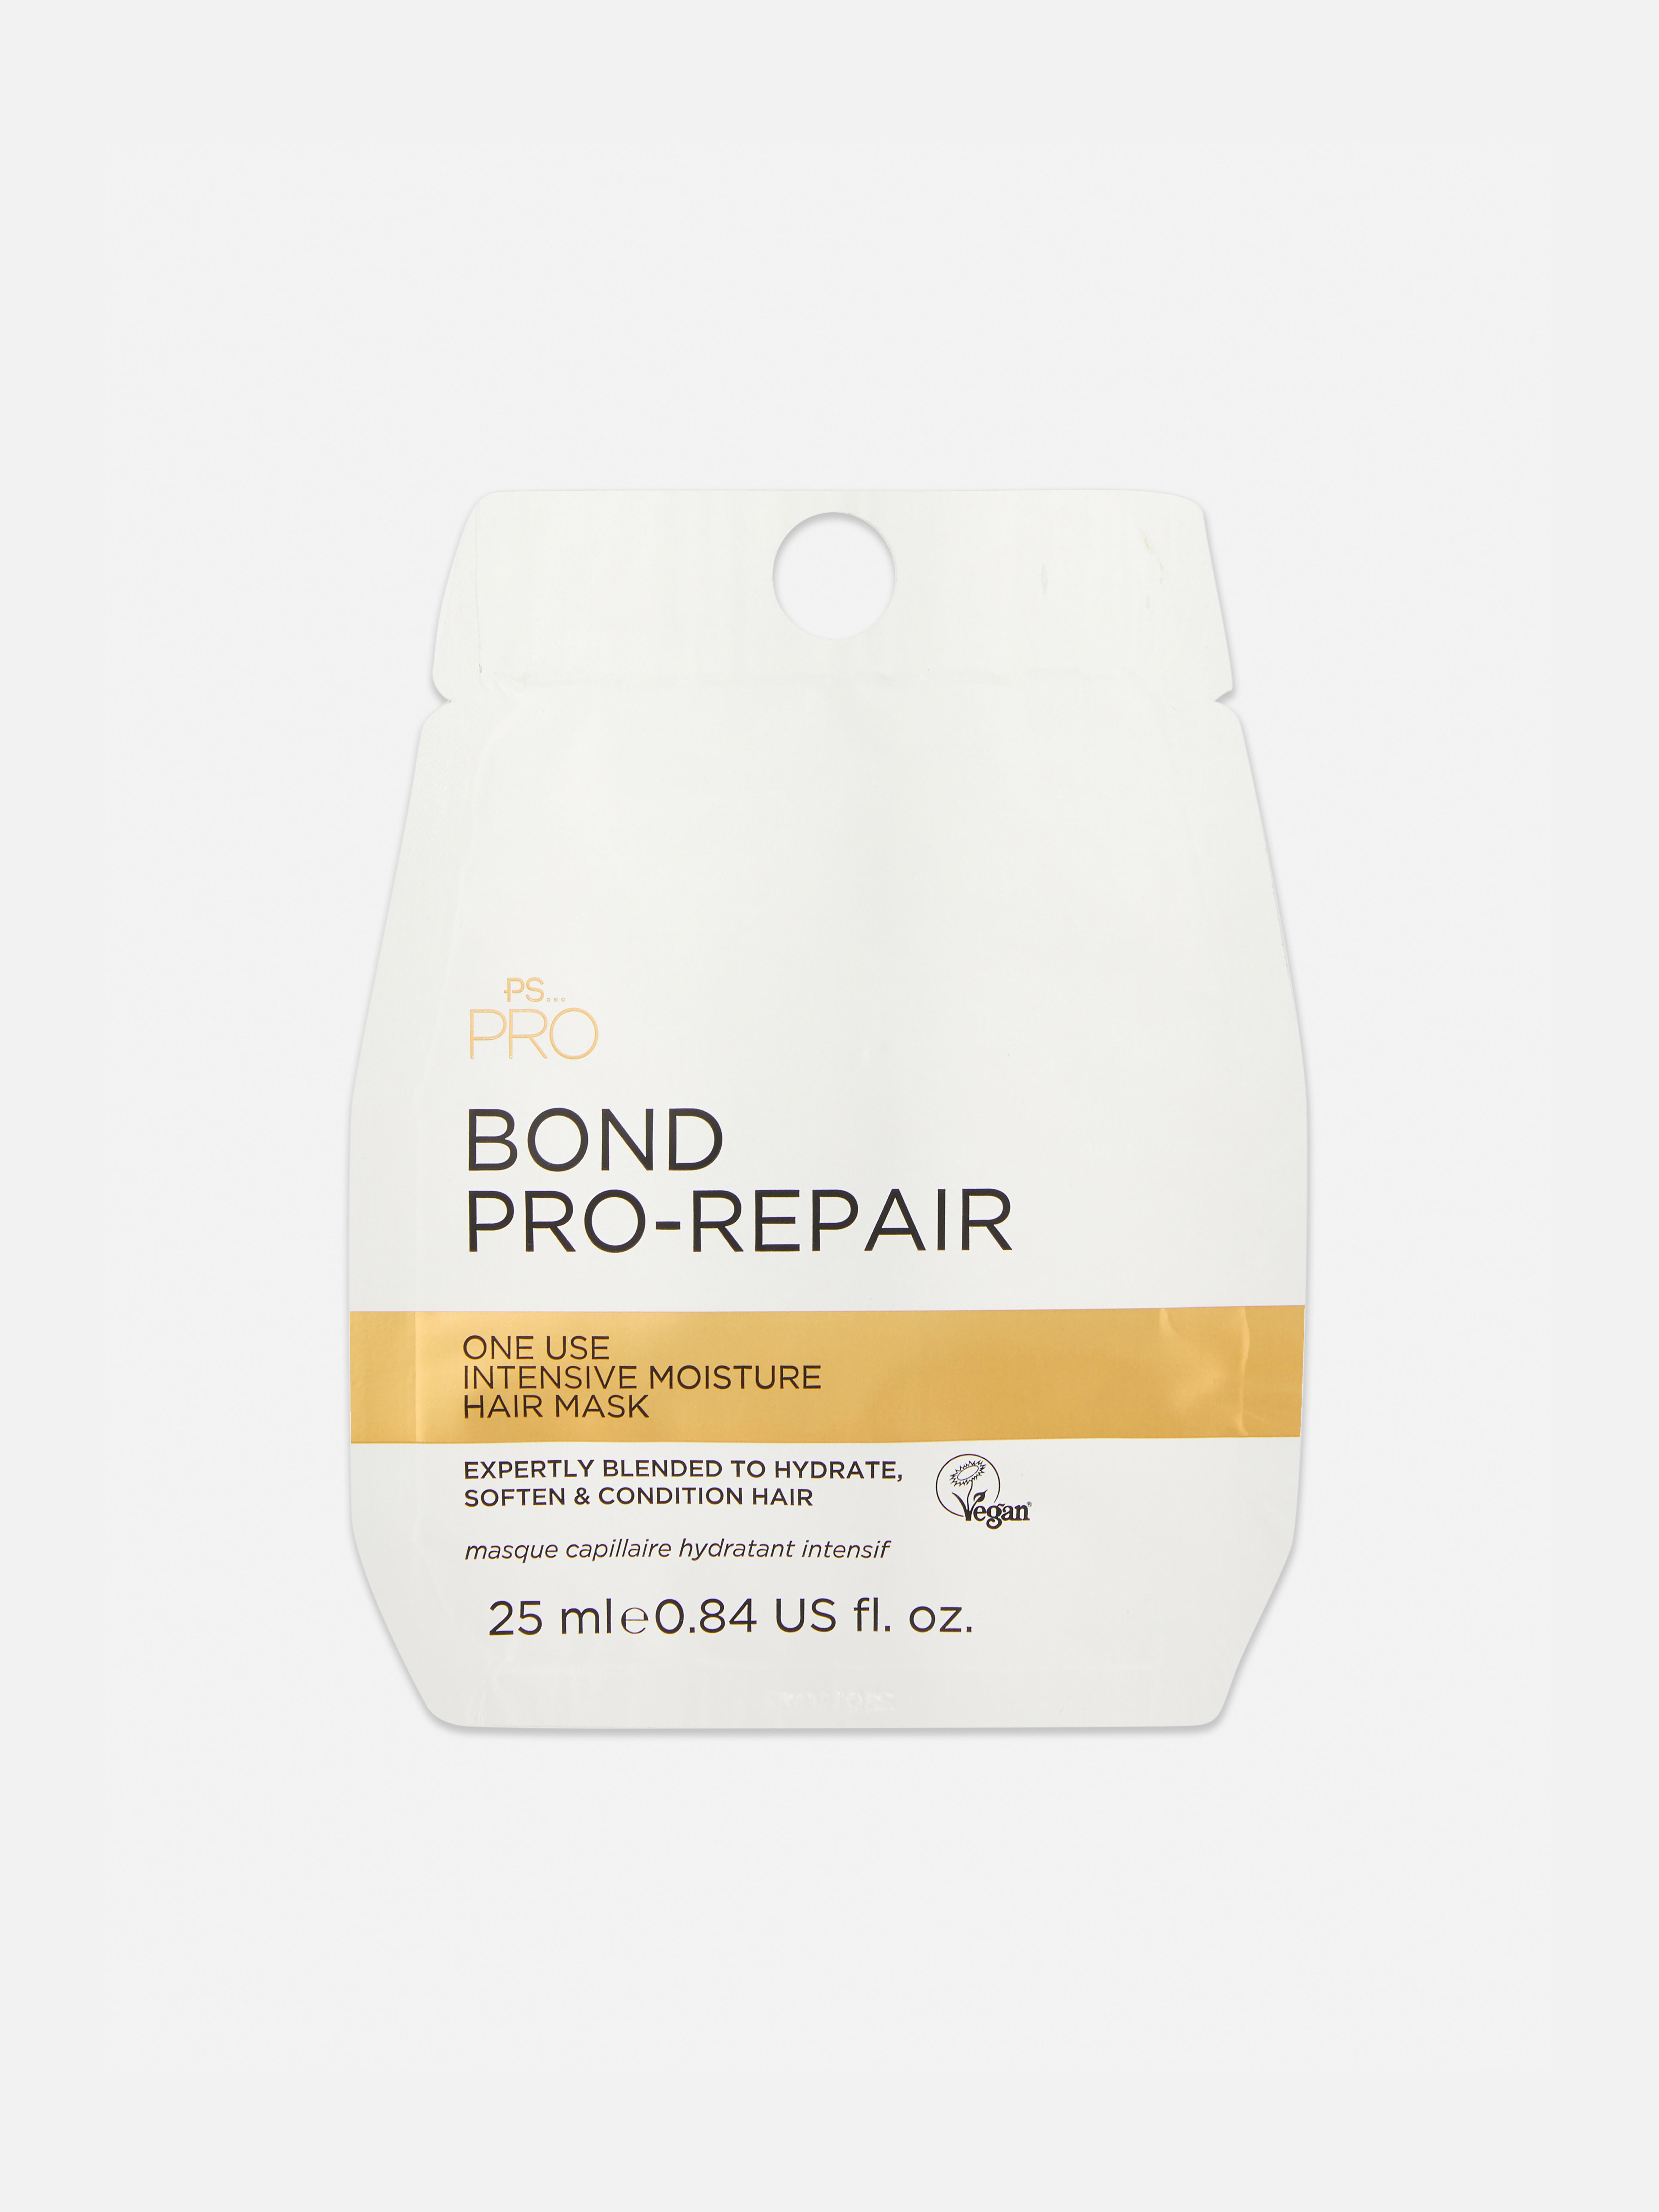 PS… Pro Bond Repair Feuchtigkeitsmaske